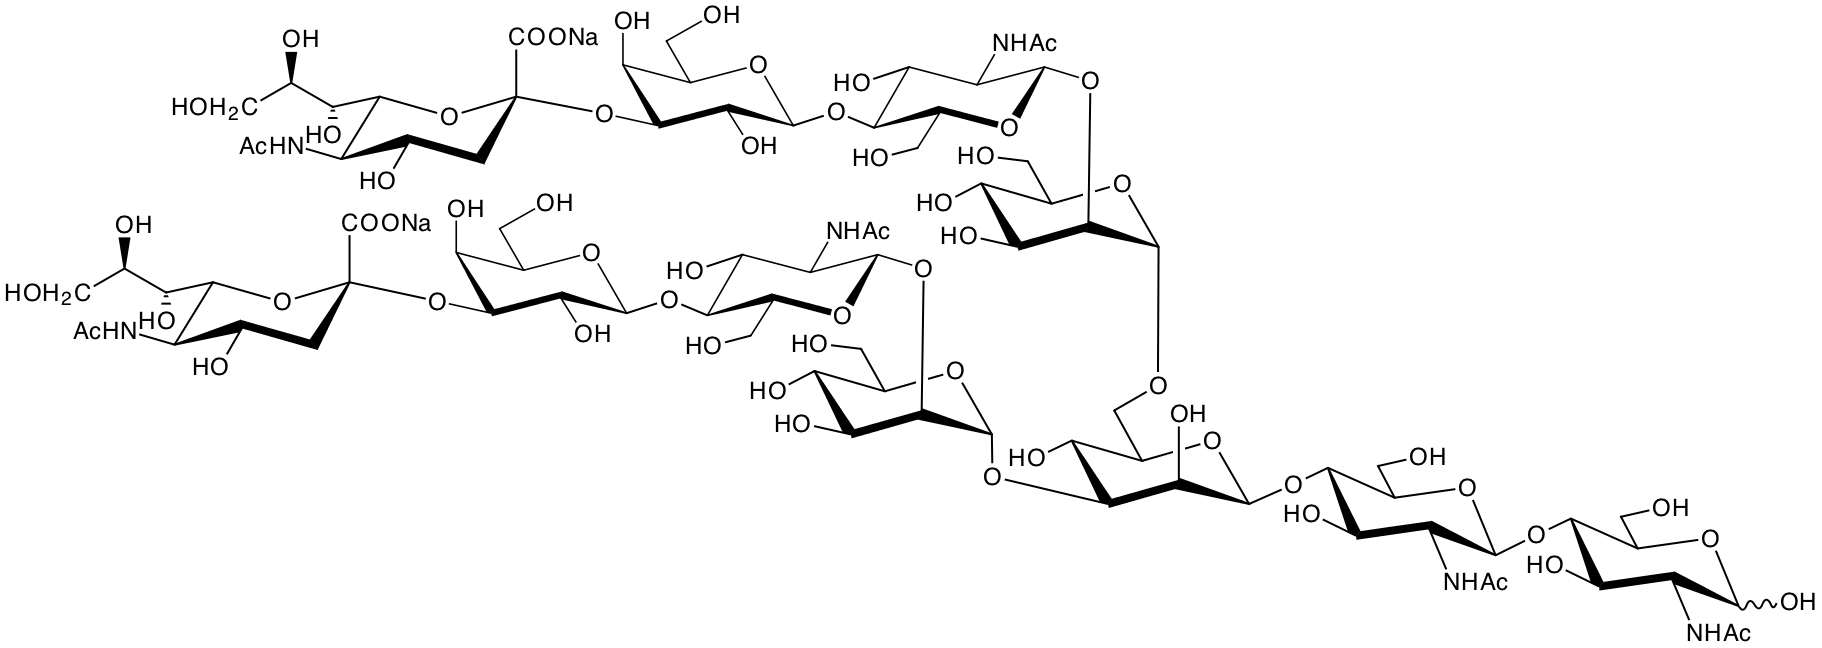 structure of NeuNAcalpha2,3Galbeta1,4GlcNAcbeta1,2Manalpha1,3(NeuNAcalpha2,3Galbeta1,4GlcNAcbeta1,2Manalpha1,6)Manbeta1,4GlcNAcbeta1,4GlcNAc disodium salt